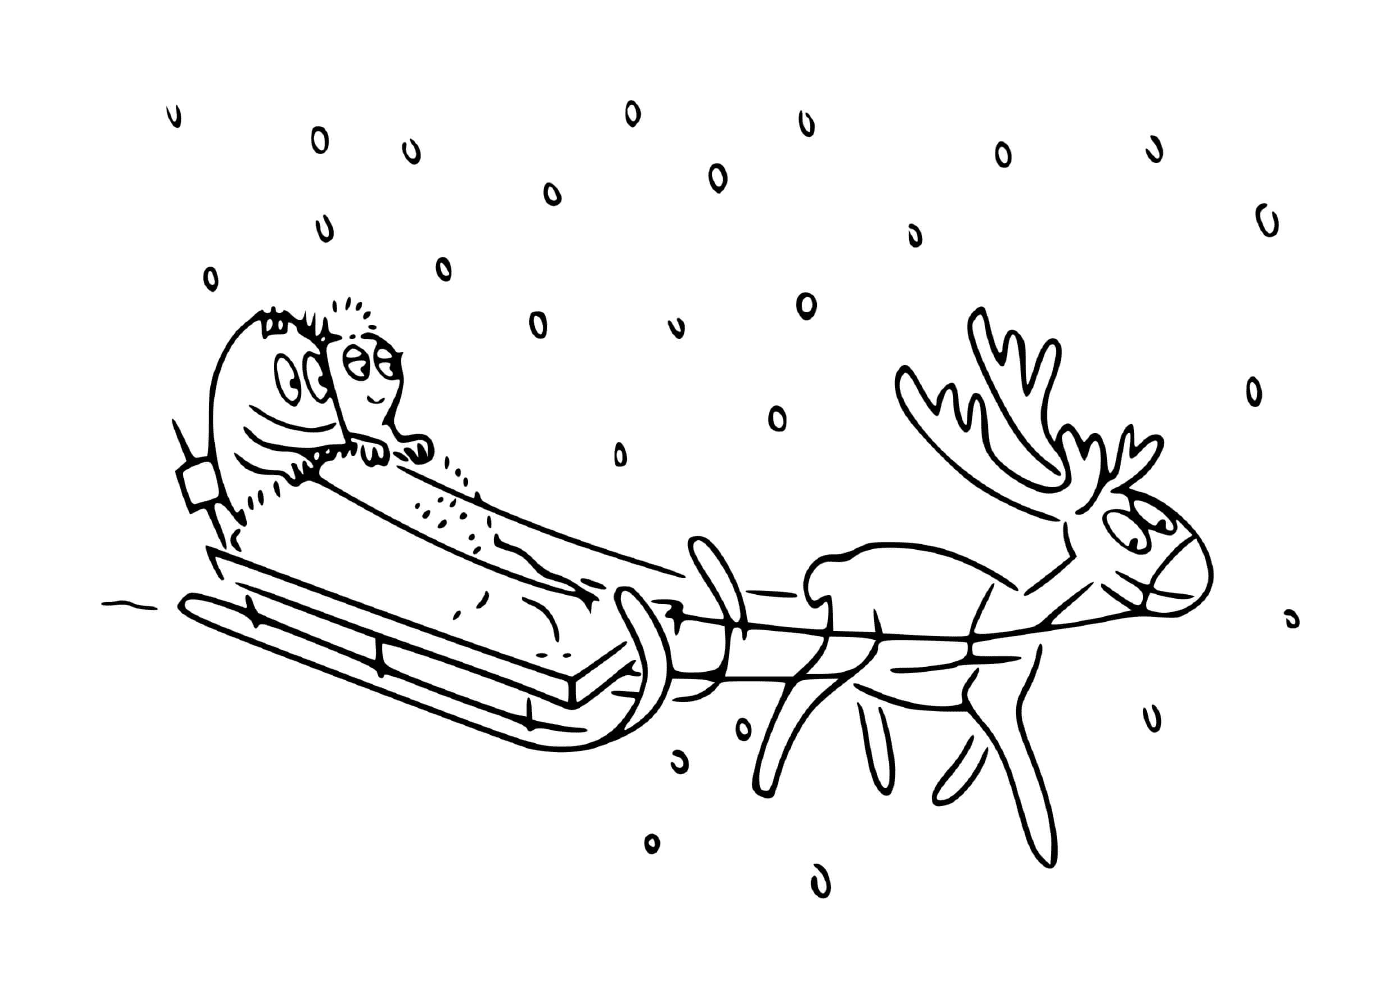  一只驯鹿拉着一只雪橇 